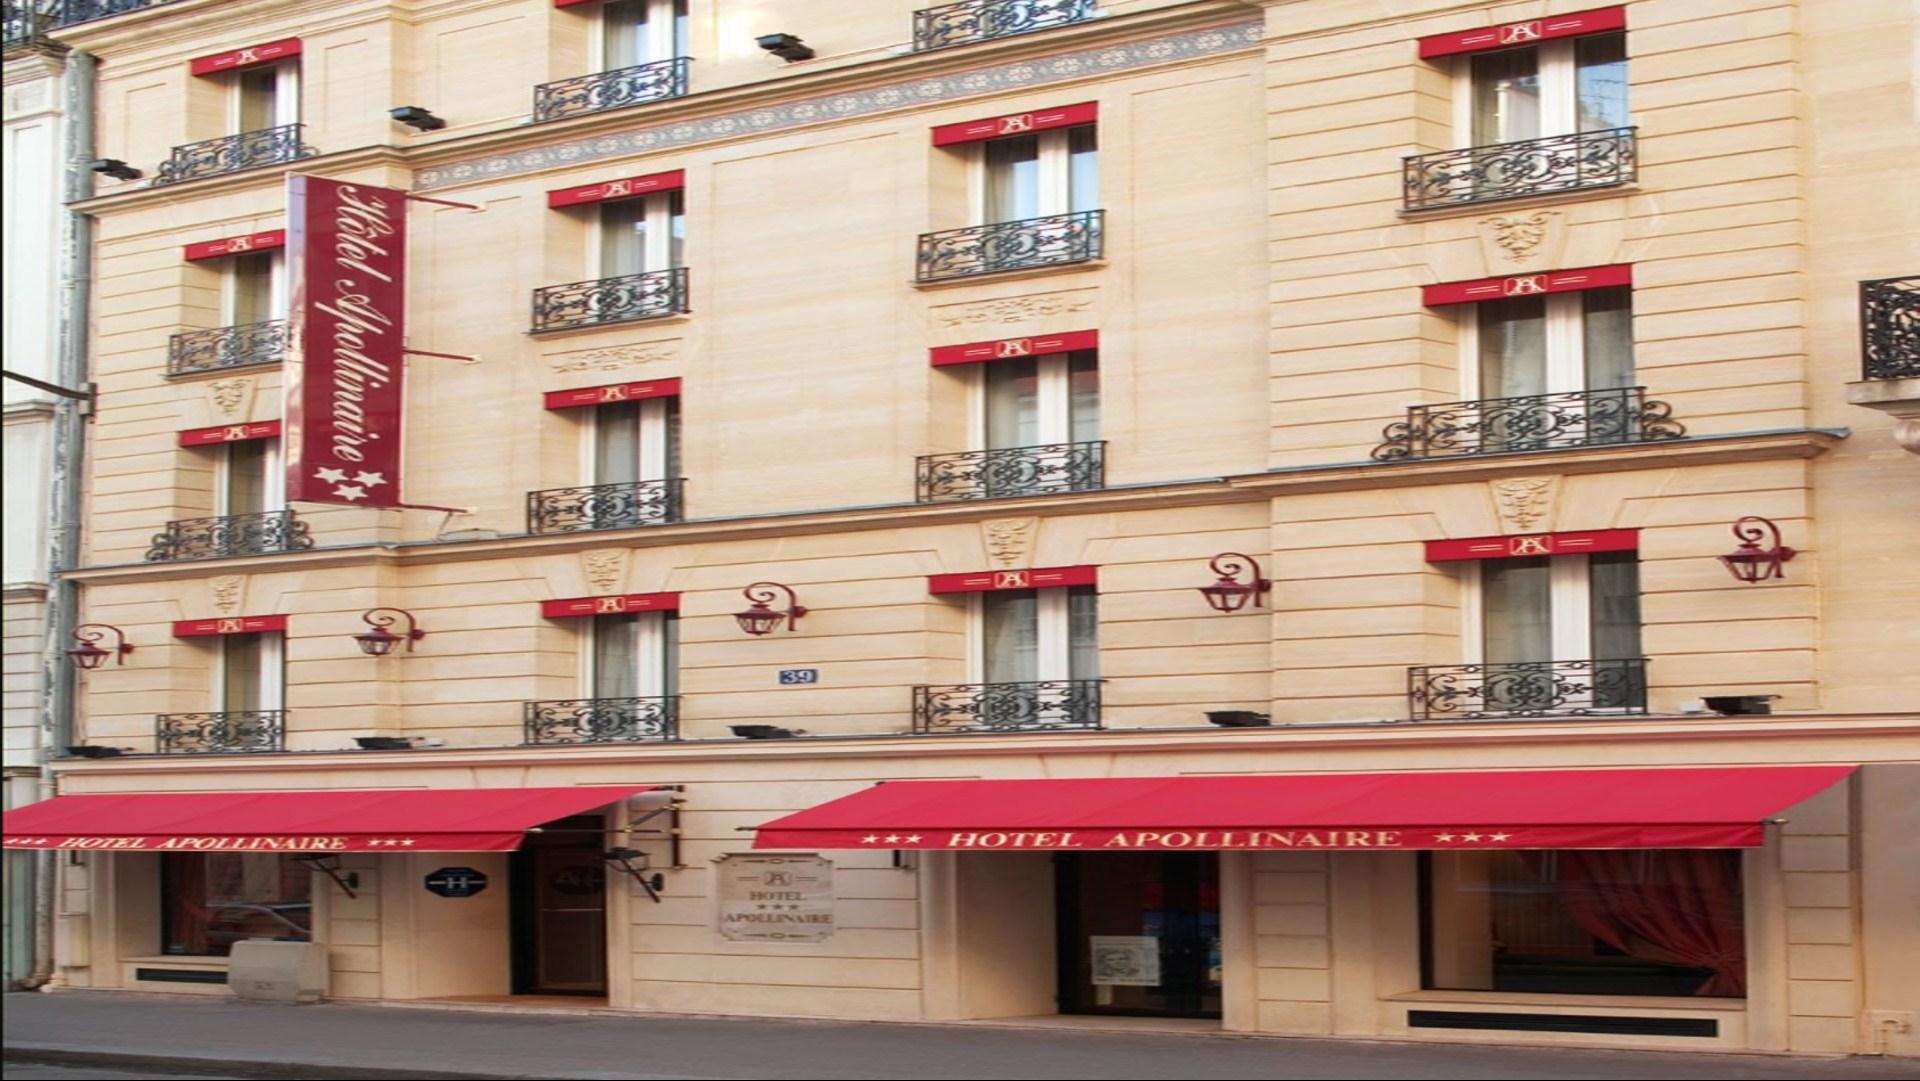 Hotel Apollinaire in Paris, FR